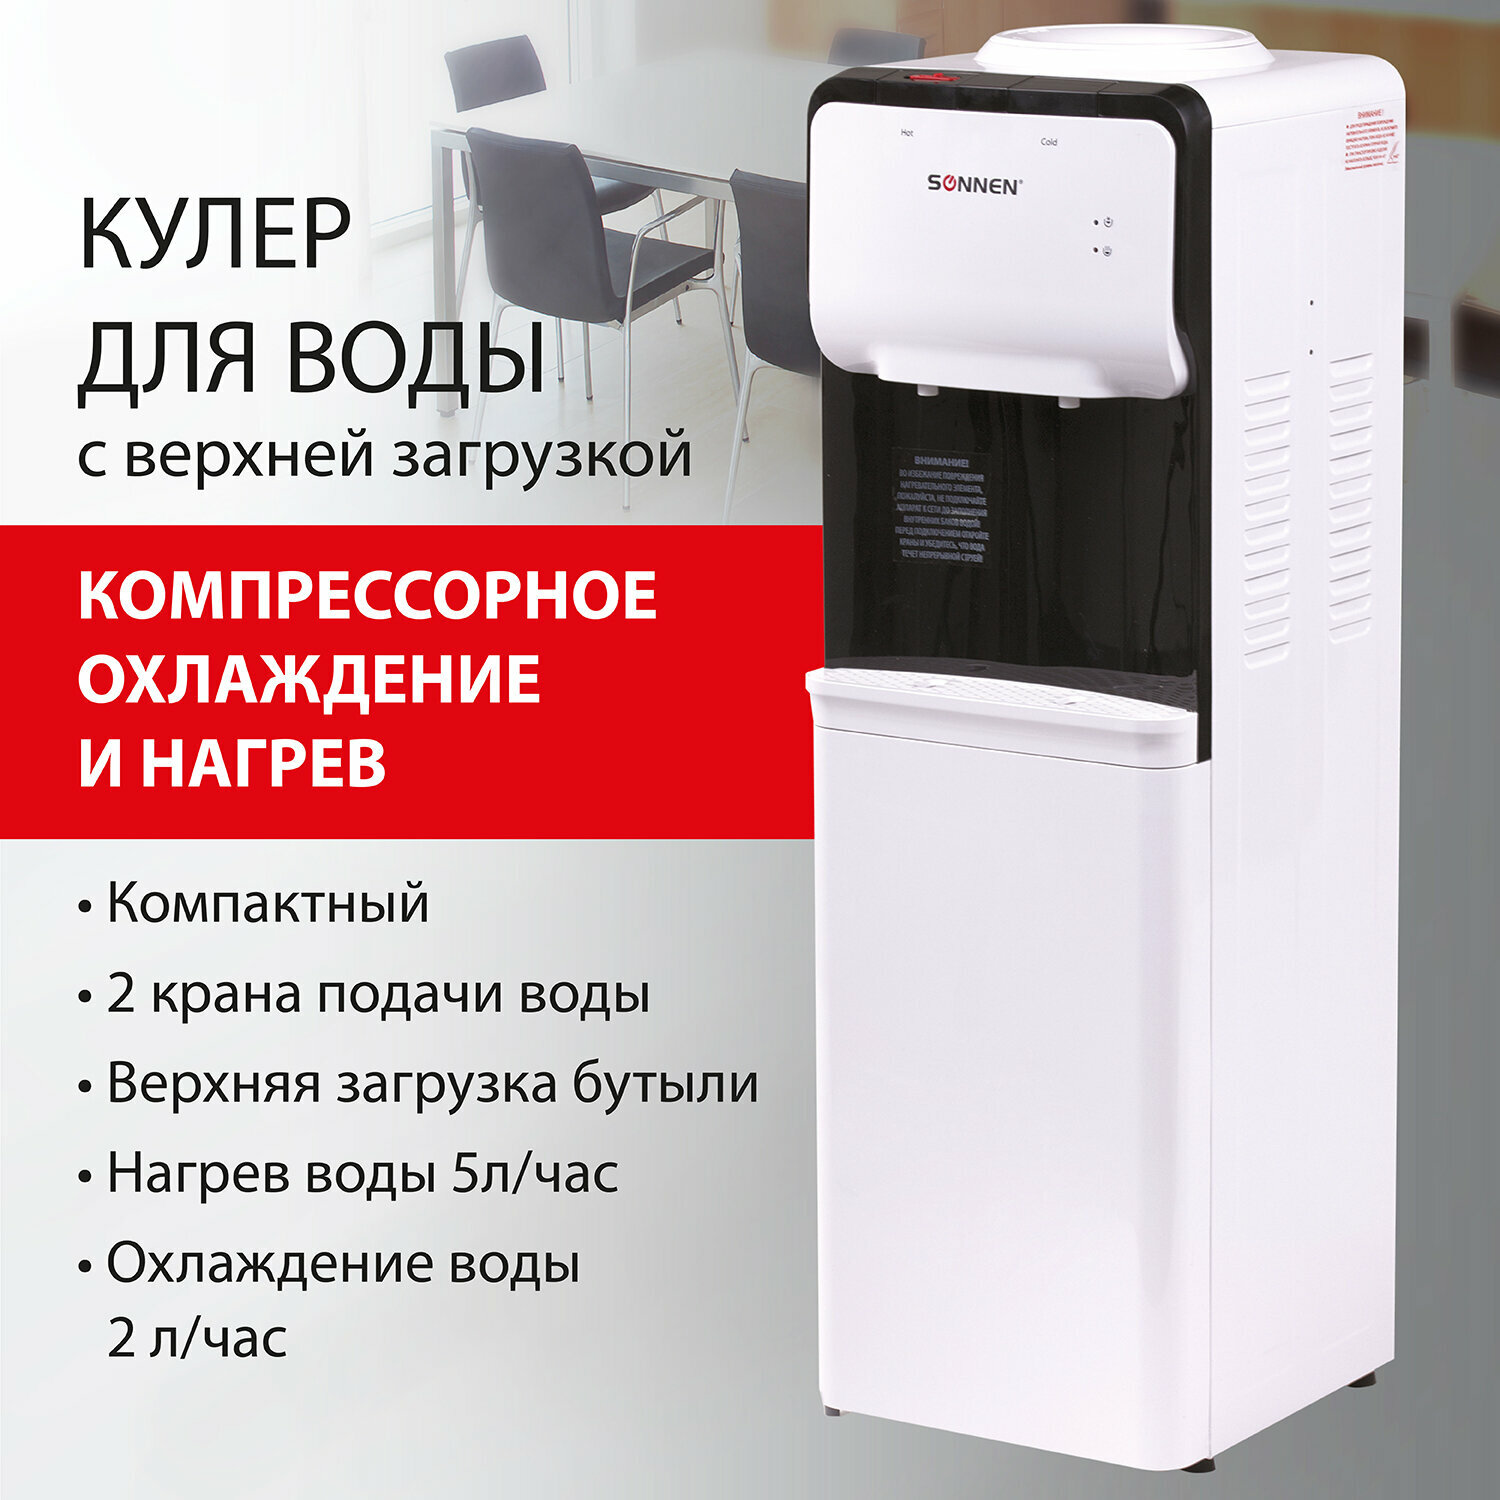 Кулер для воды SONNEN FSC-02S, напольный, нагрев/охлаждение компрессорное, 2 крана, белый, 455415 /Квант продажи 1 ед./